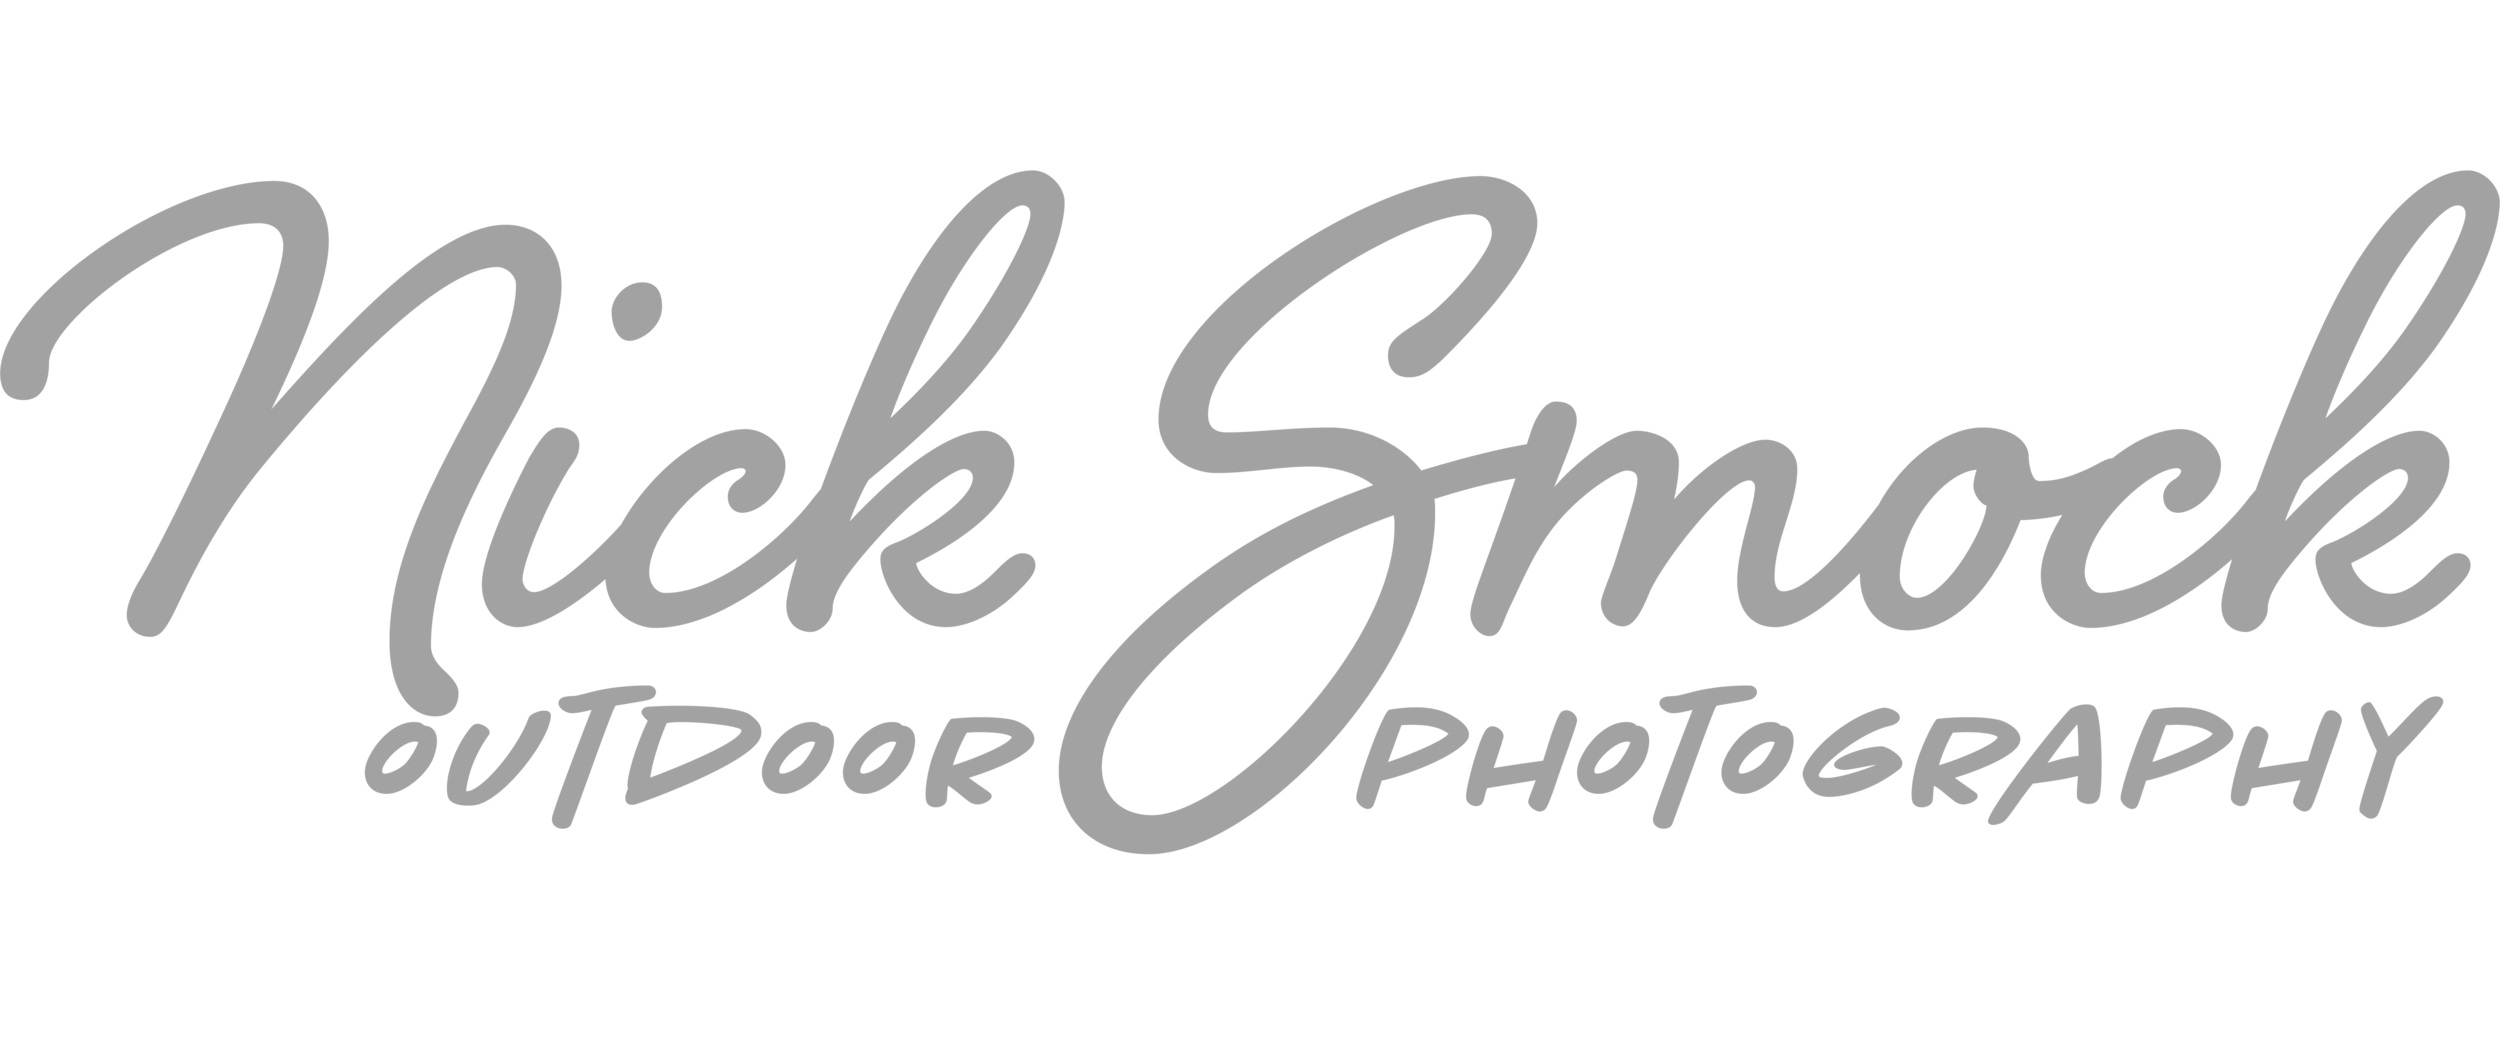 Nick Smock Photography